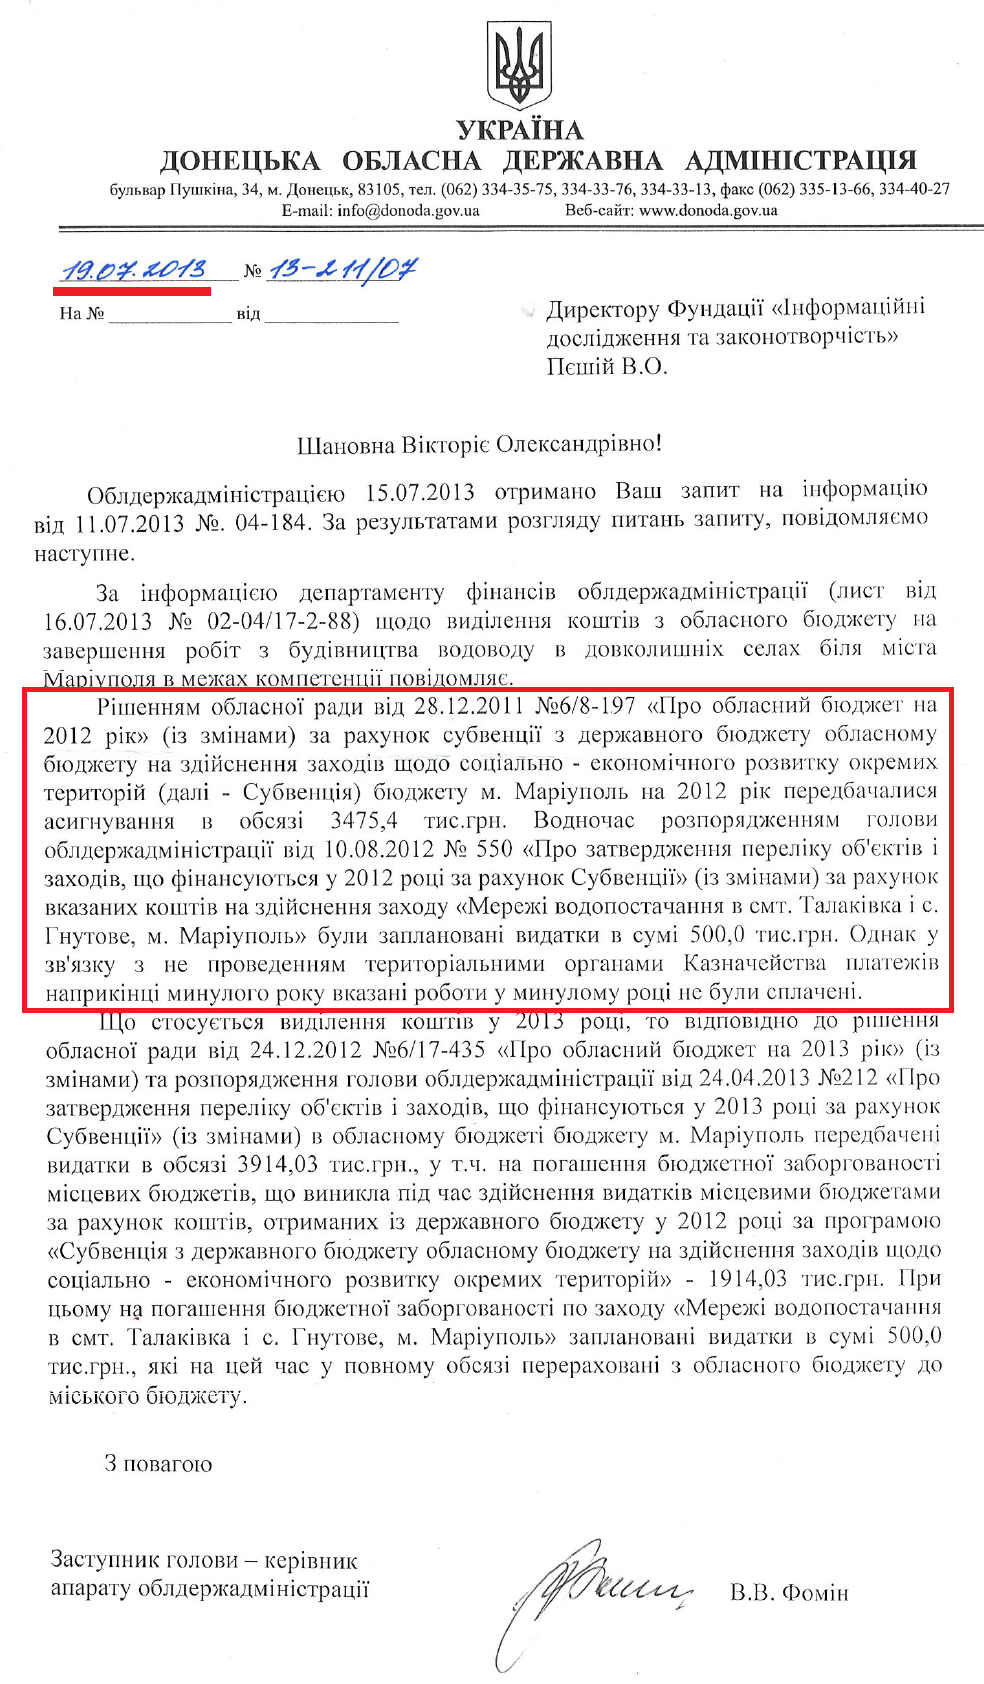 Лист Заступника голови Донецької ОДА В.В.Фоміна від 17 липня 2013 року